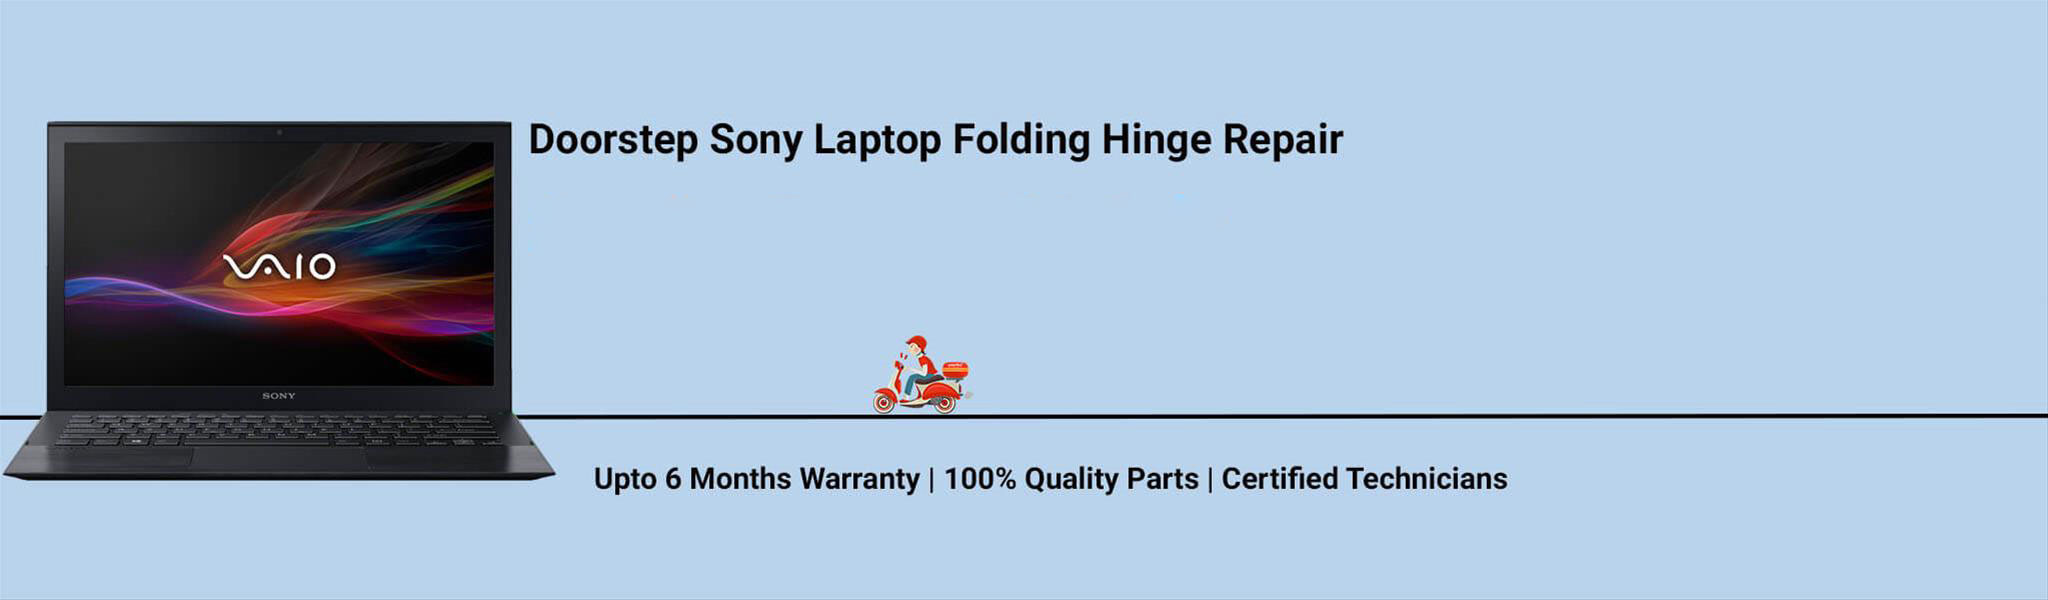 sony-laptop-folding-hinge-repair.jpg